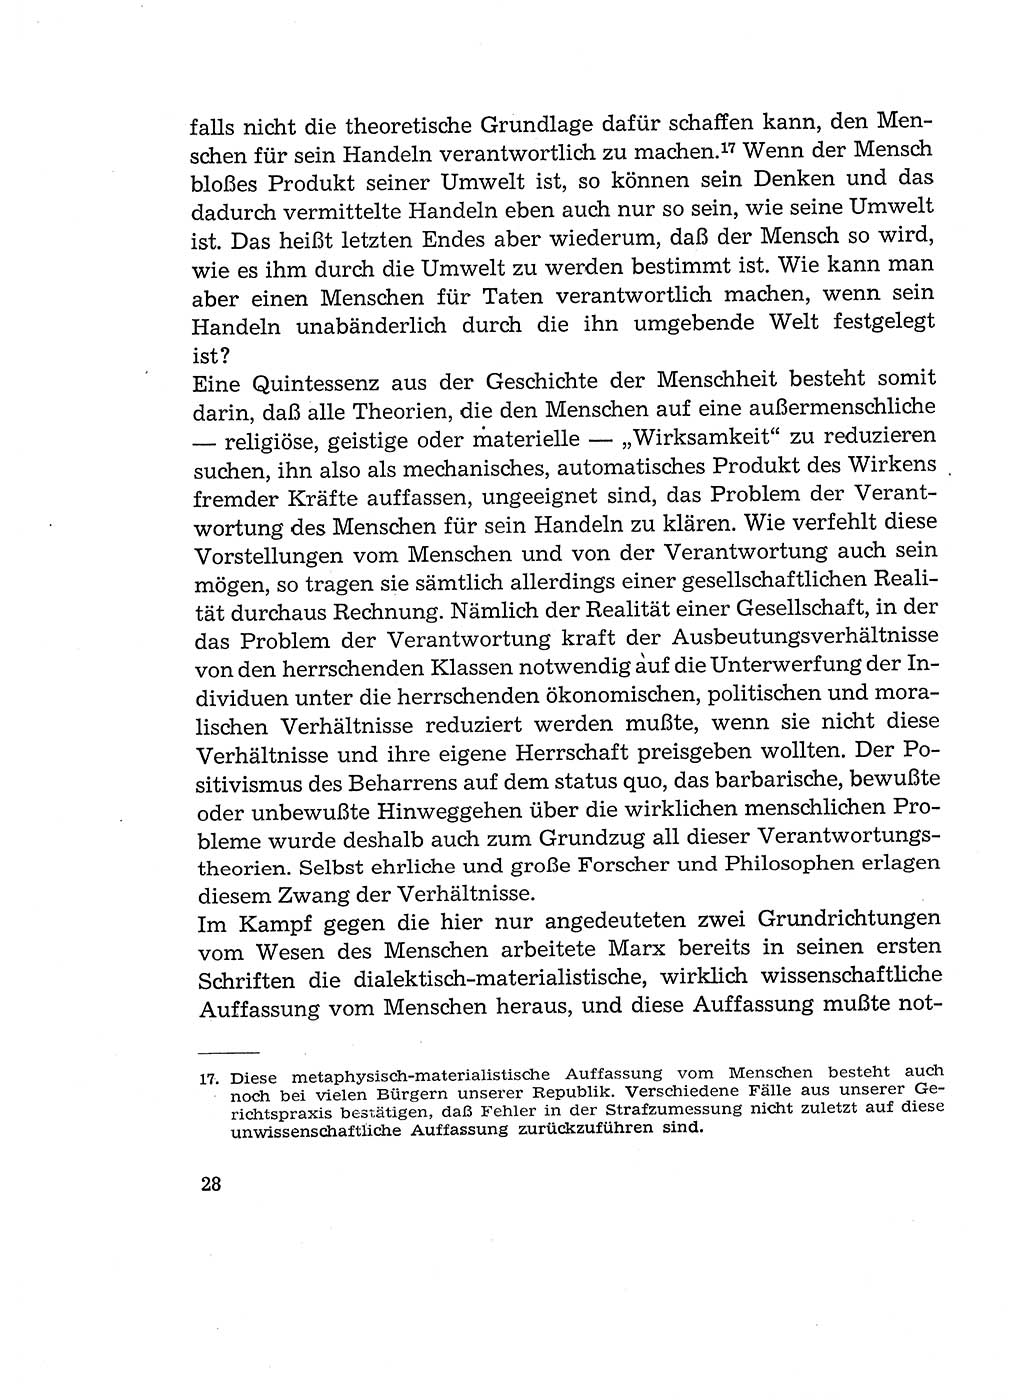 Verantwortung und Schuld im neuen Strafgesetzbuch (StGB) [Deutsche Demokratische Republik (DDR)] 1964, Seite 28 (Verantw. Sch. StGB DDR 1964, S. 28)